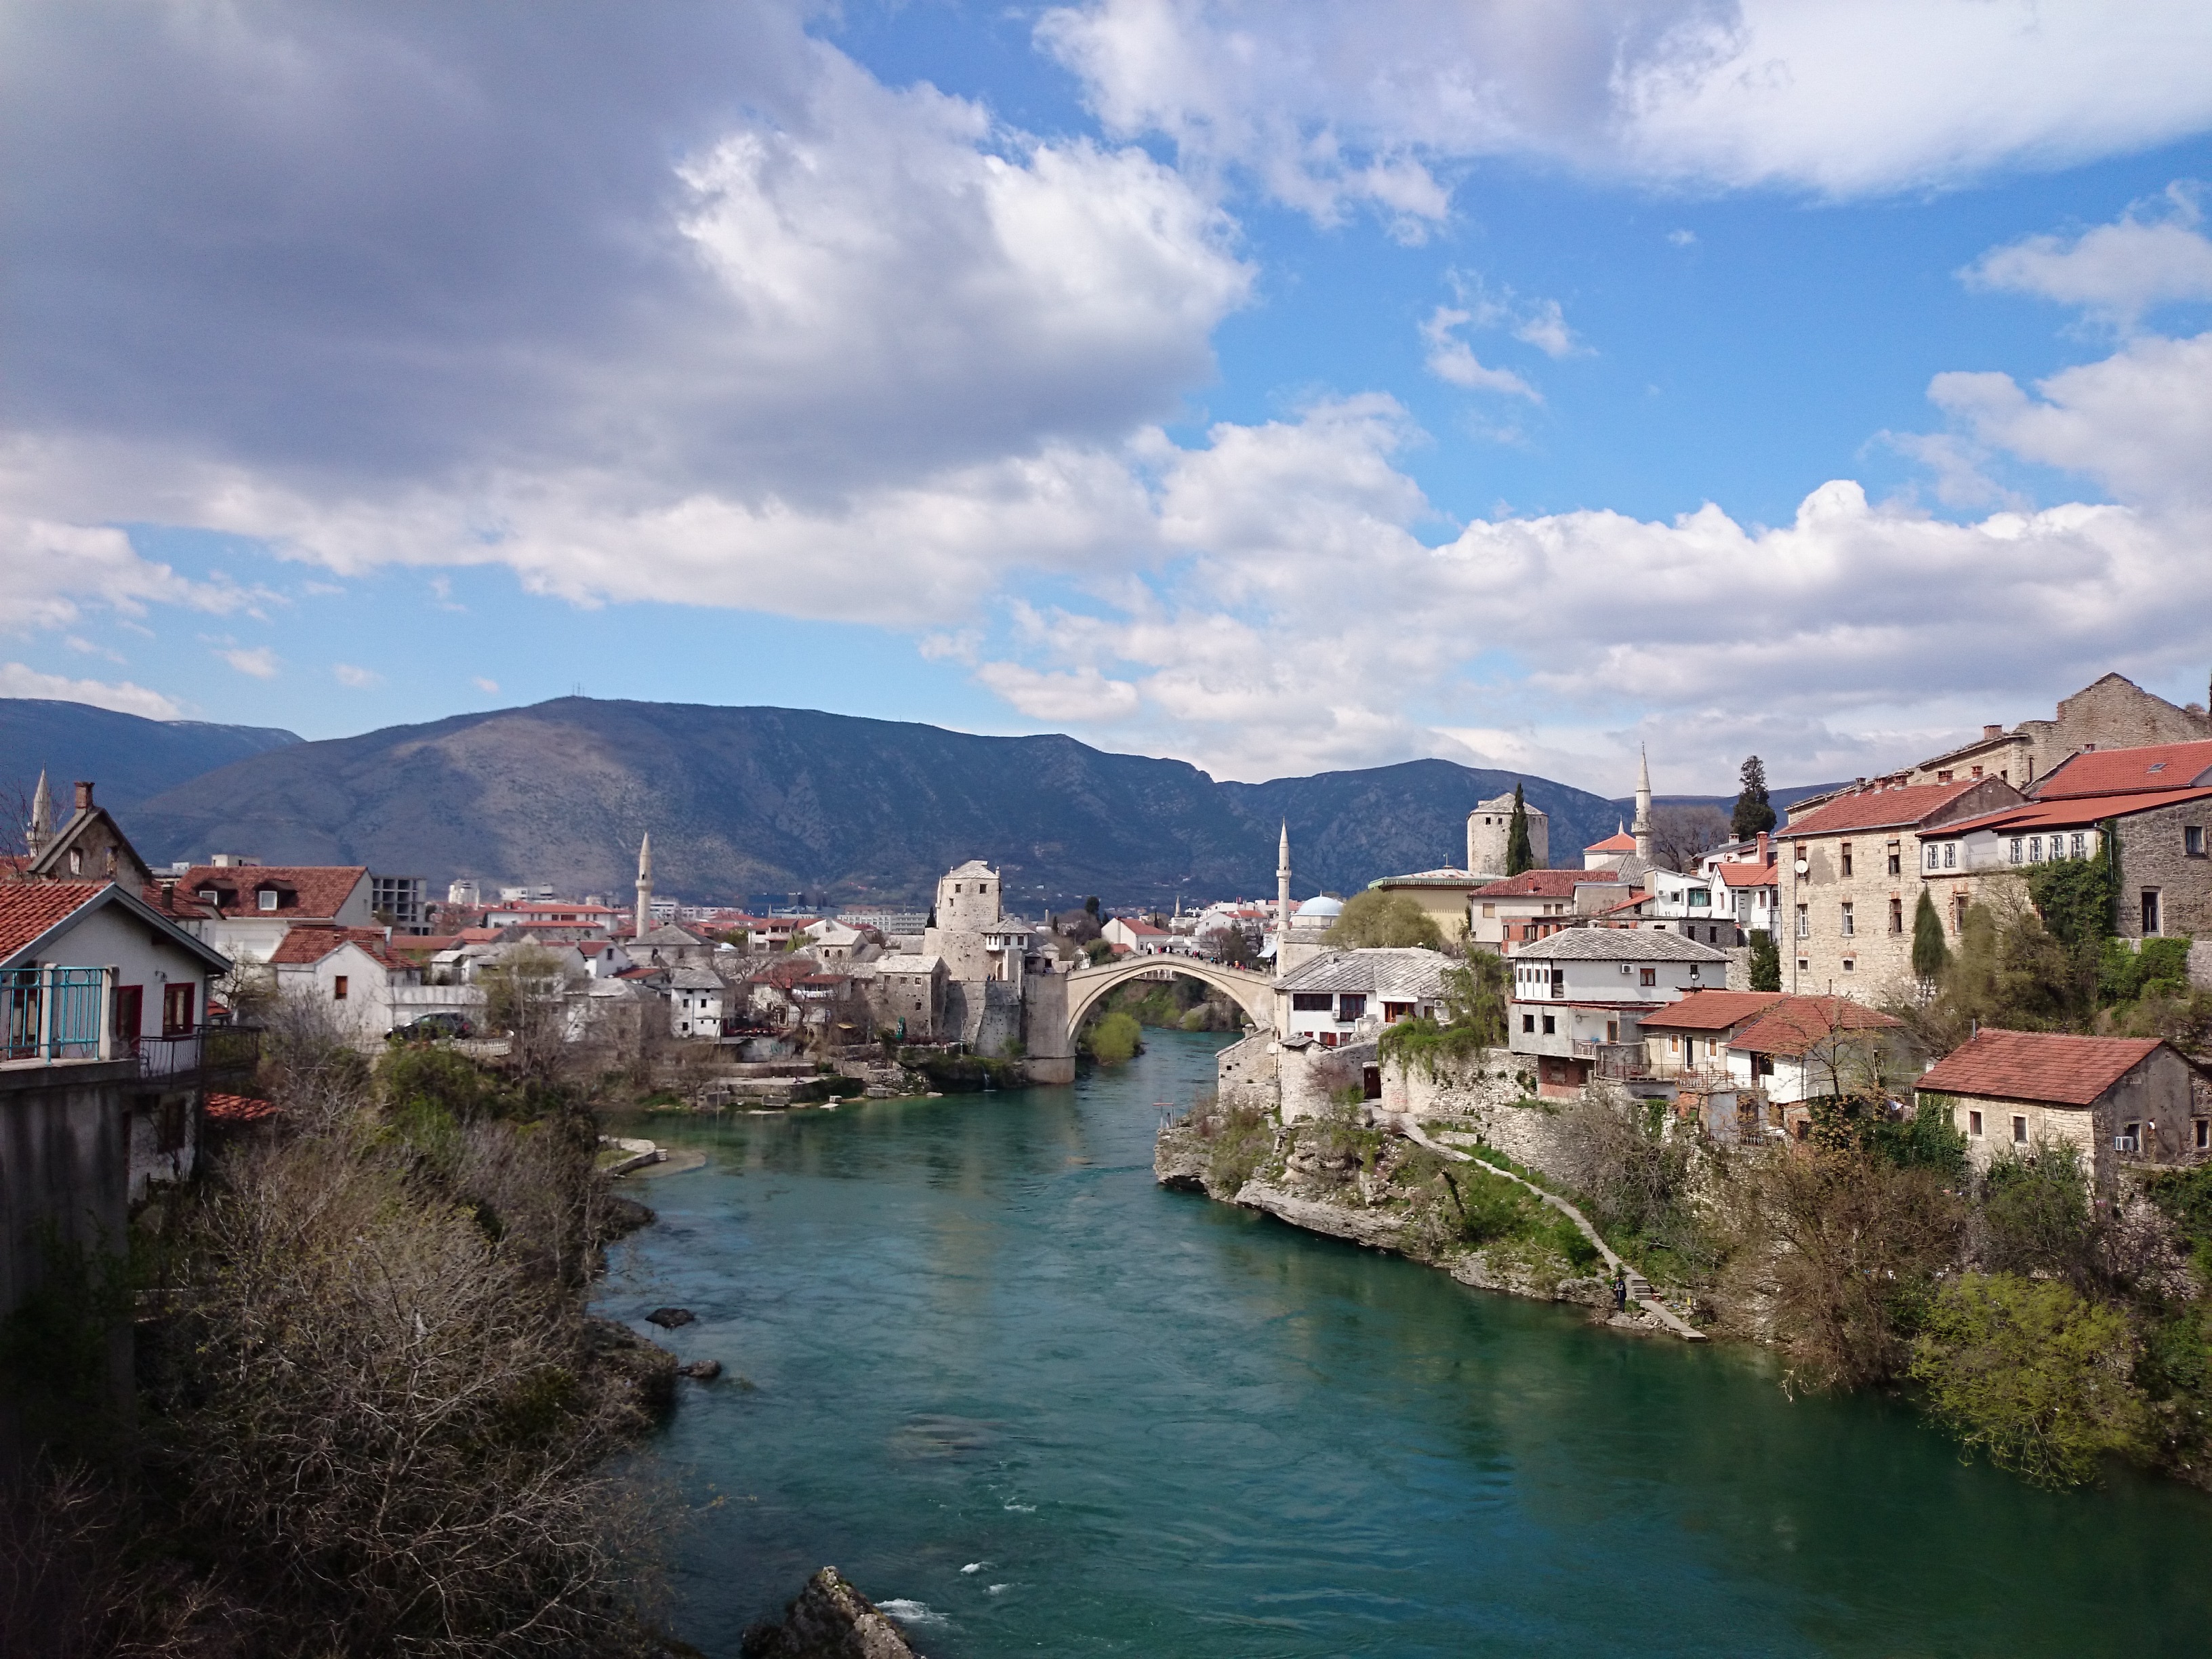 Landschaftsbild mit der Brücke in Mostar